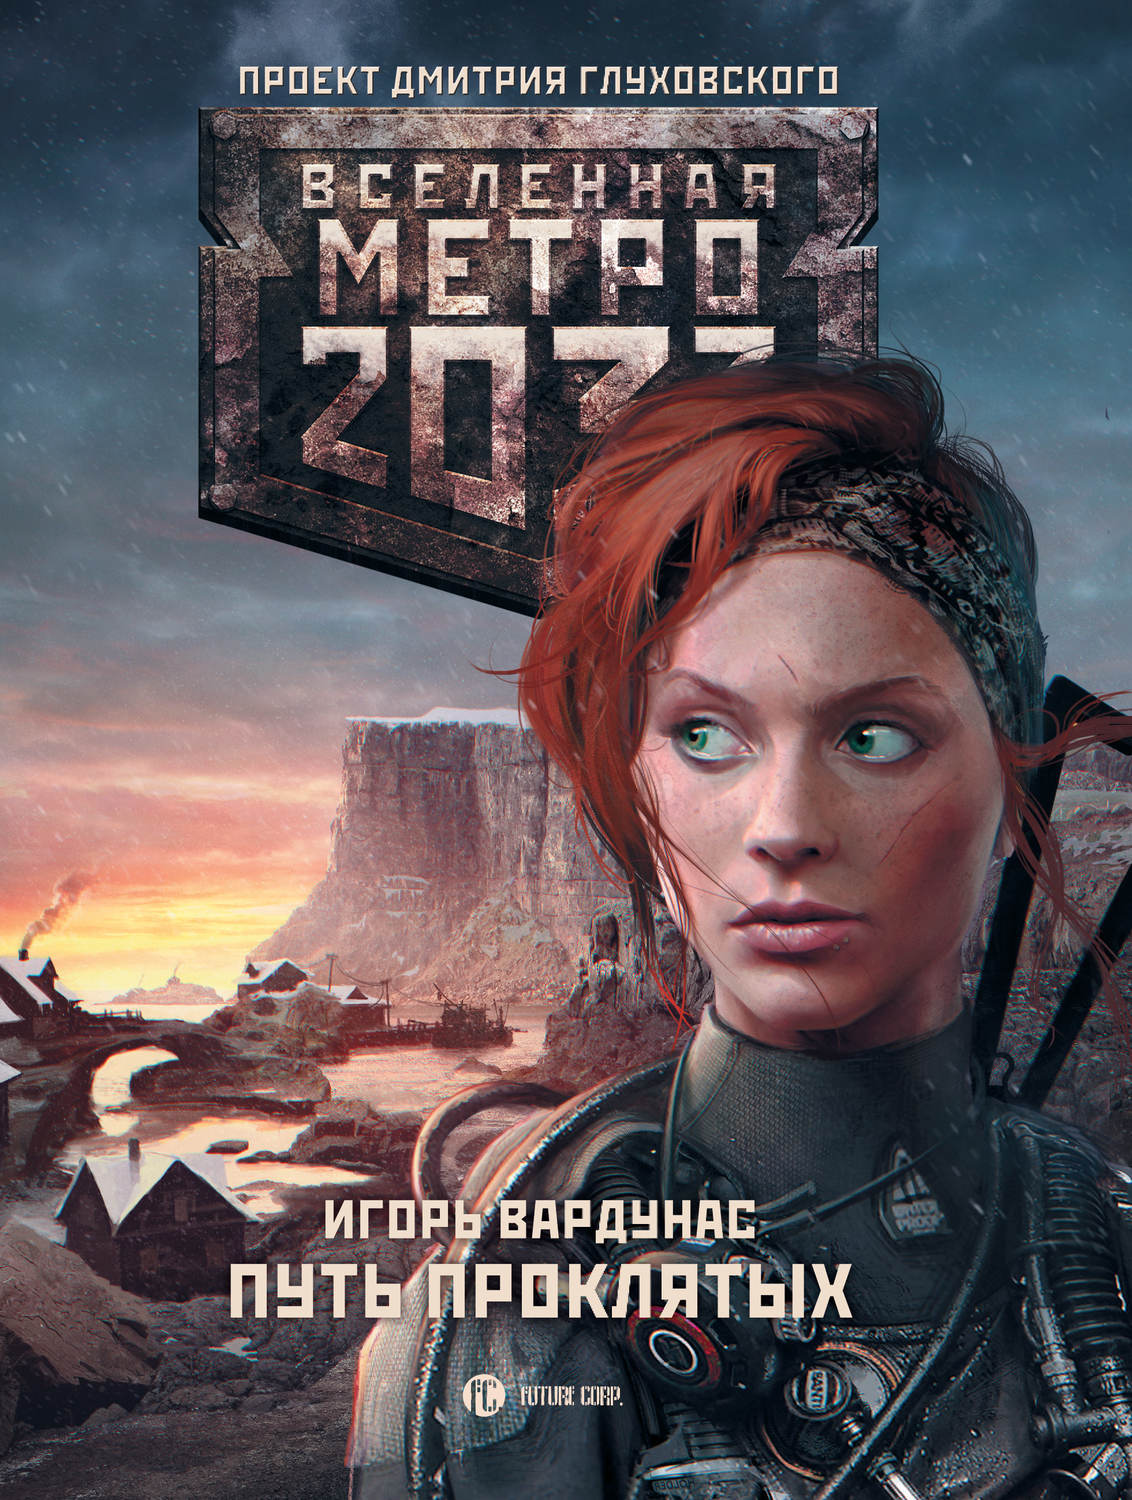 Новые книги метро 2033 скачать бесплатно fb2